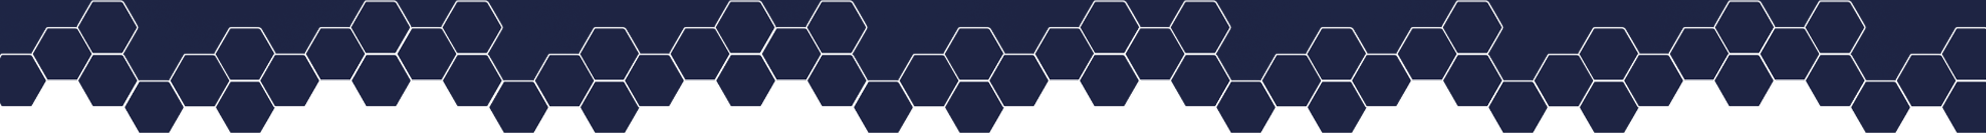 dark-blue-hexagon-pattern-1